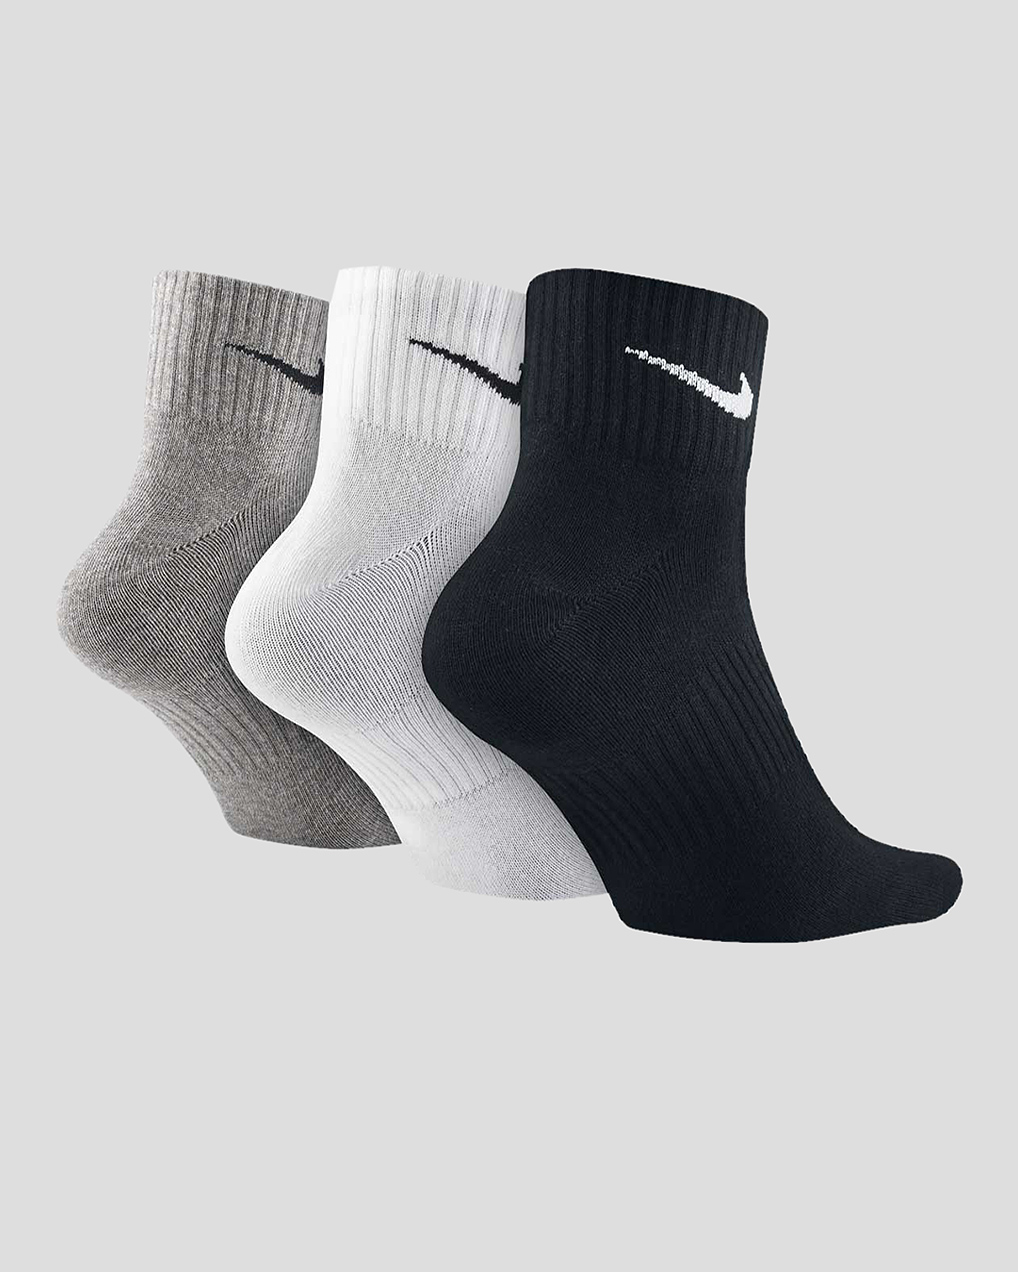 Носки найк короткие. Носки Nike sx7677-010. Nike Lightweight носки теплые высокие. Носки найк 10 пар. Носки найк м 511.